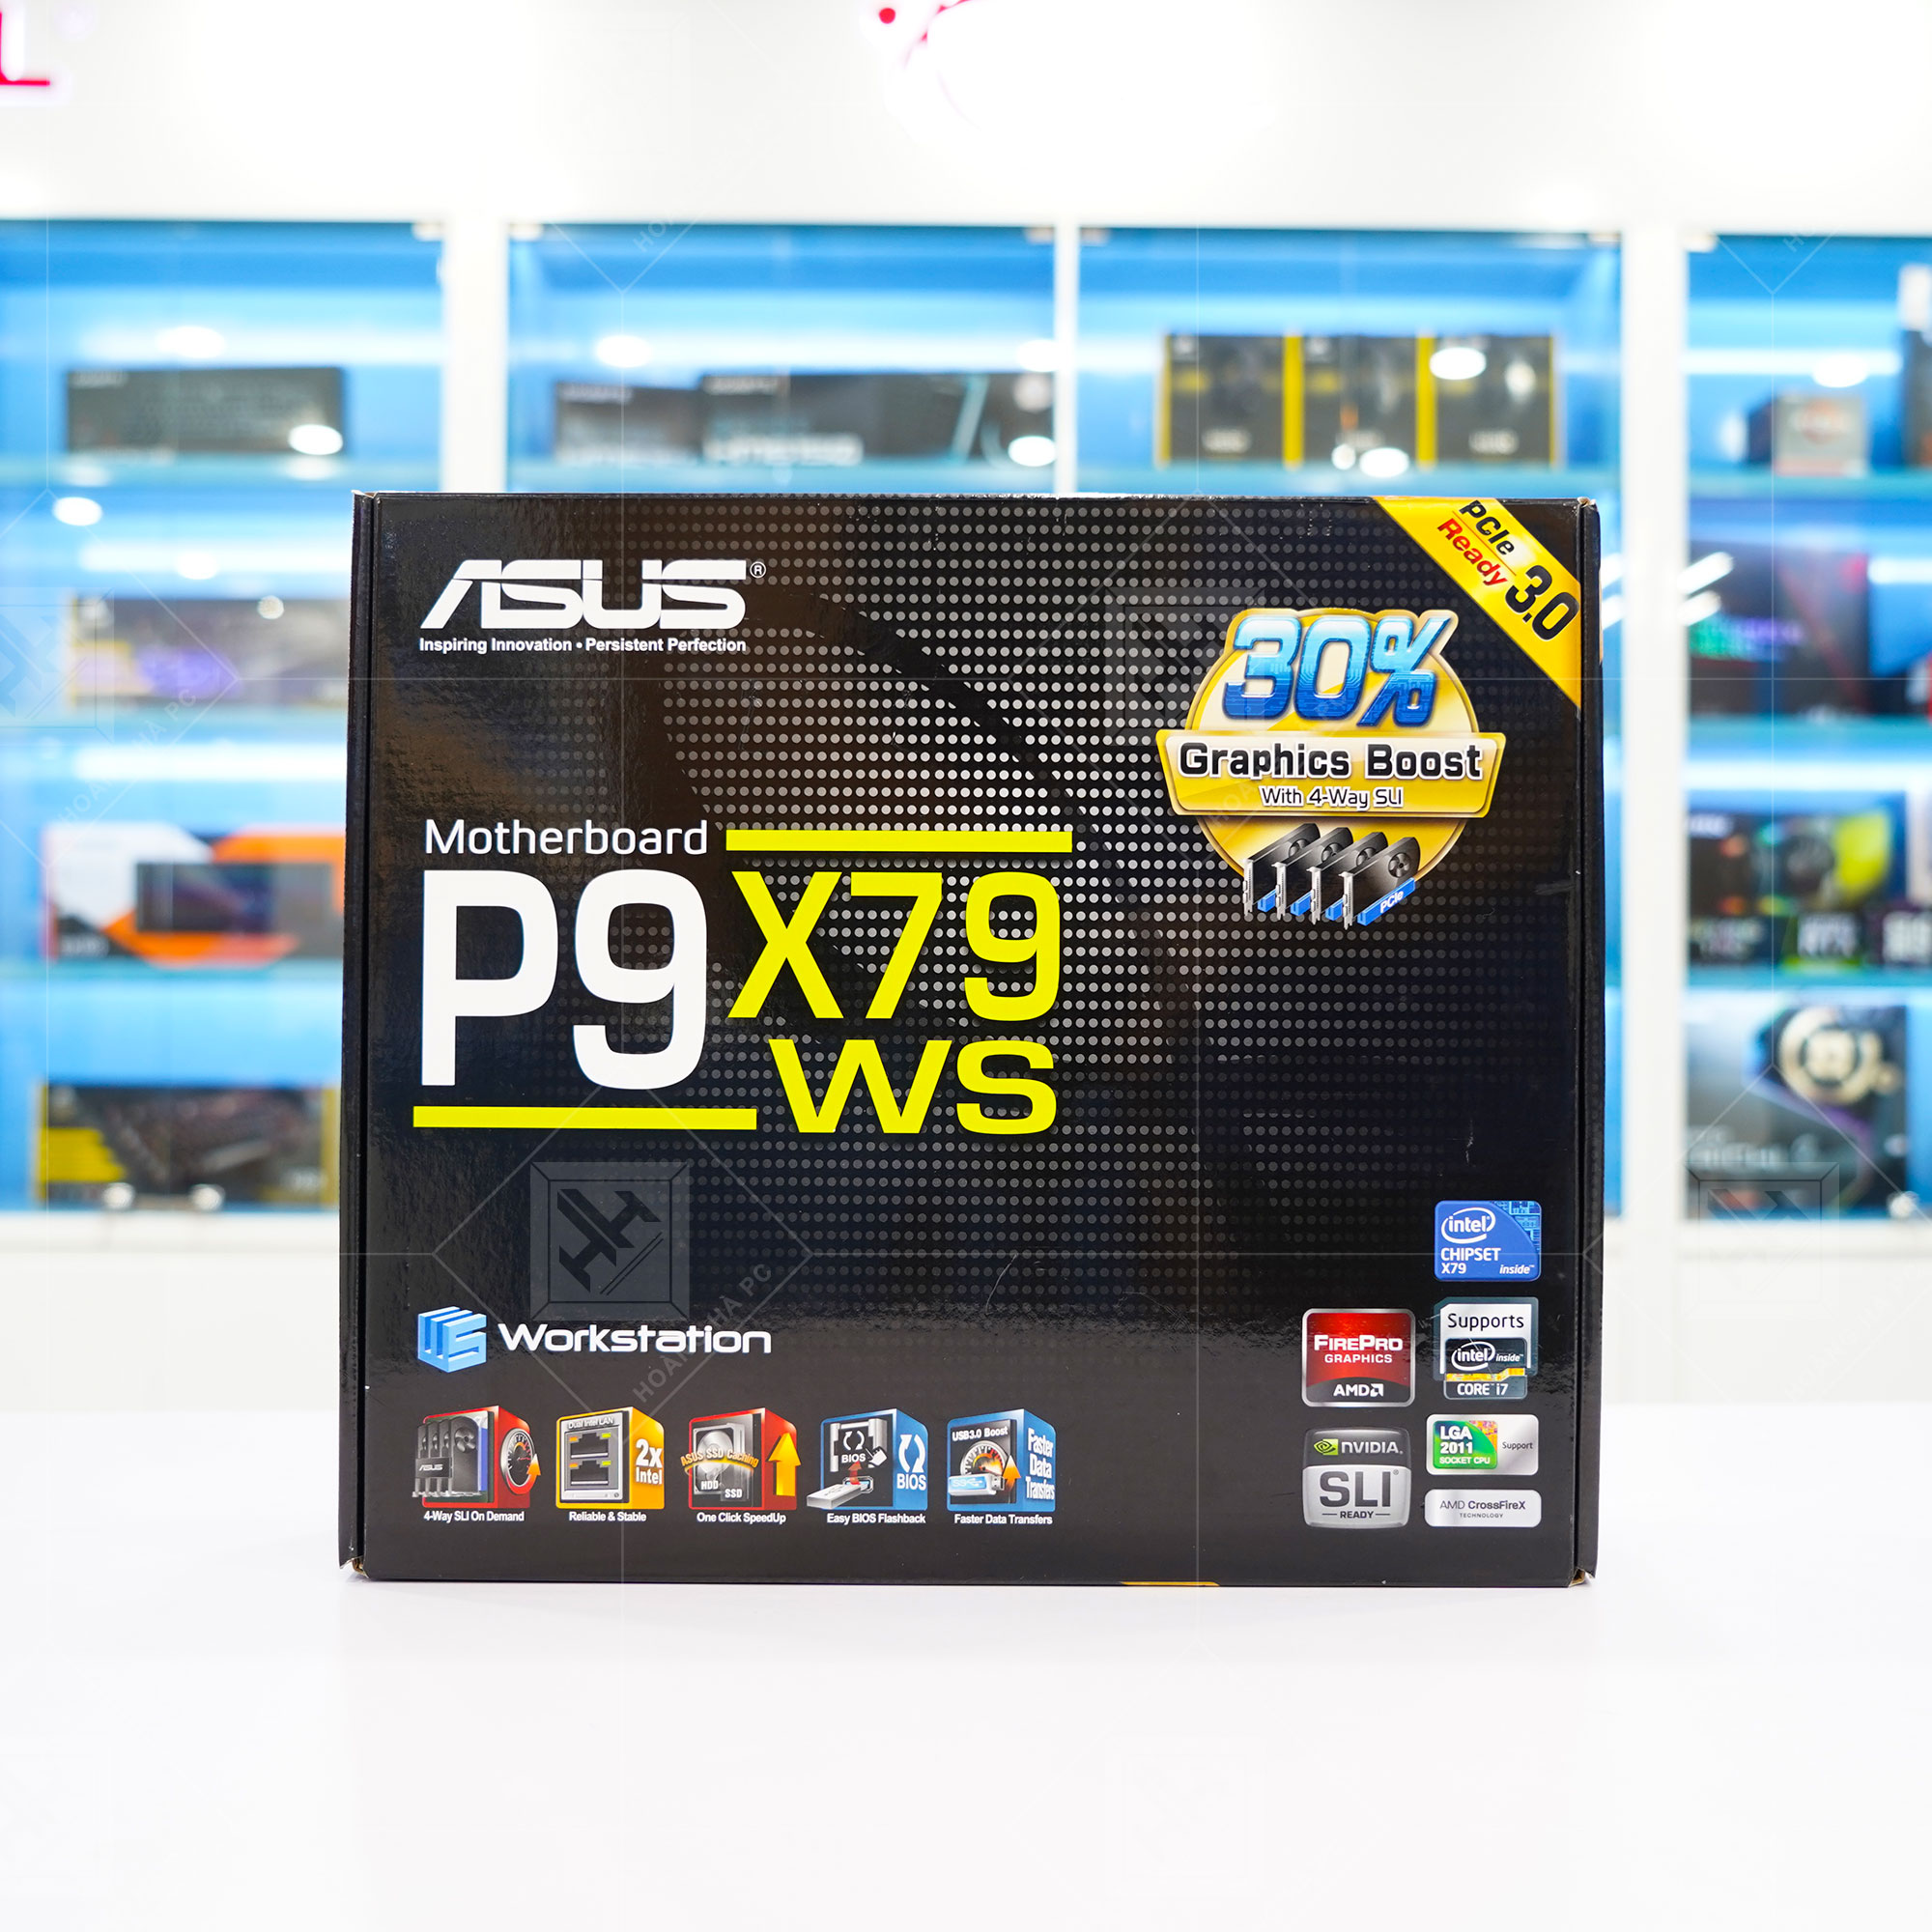 MAINBOARD ASUS P9X79 WS (Intel X79, LGA 2011, ATX, 8 Khe Cắm Ram DDR3)